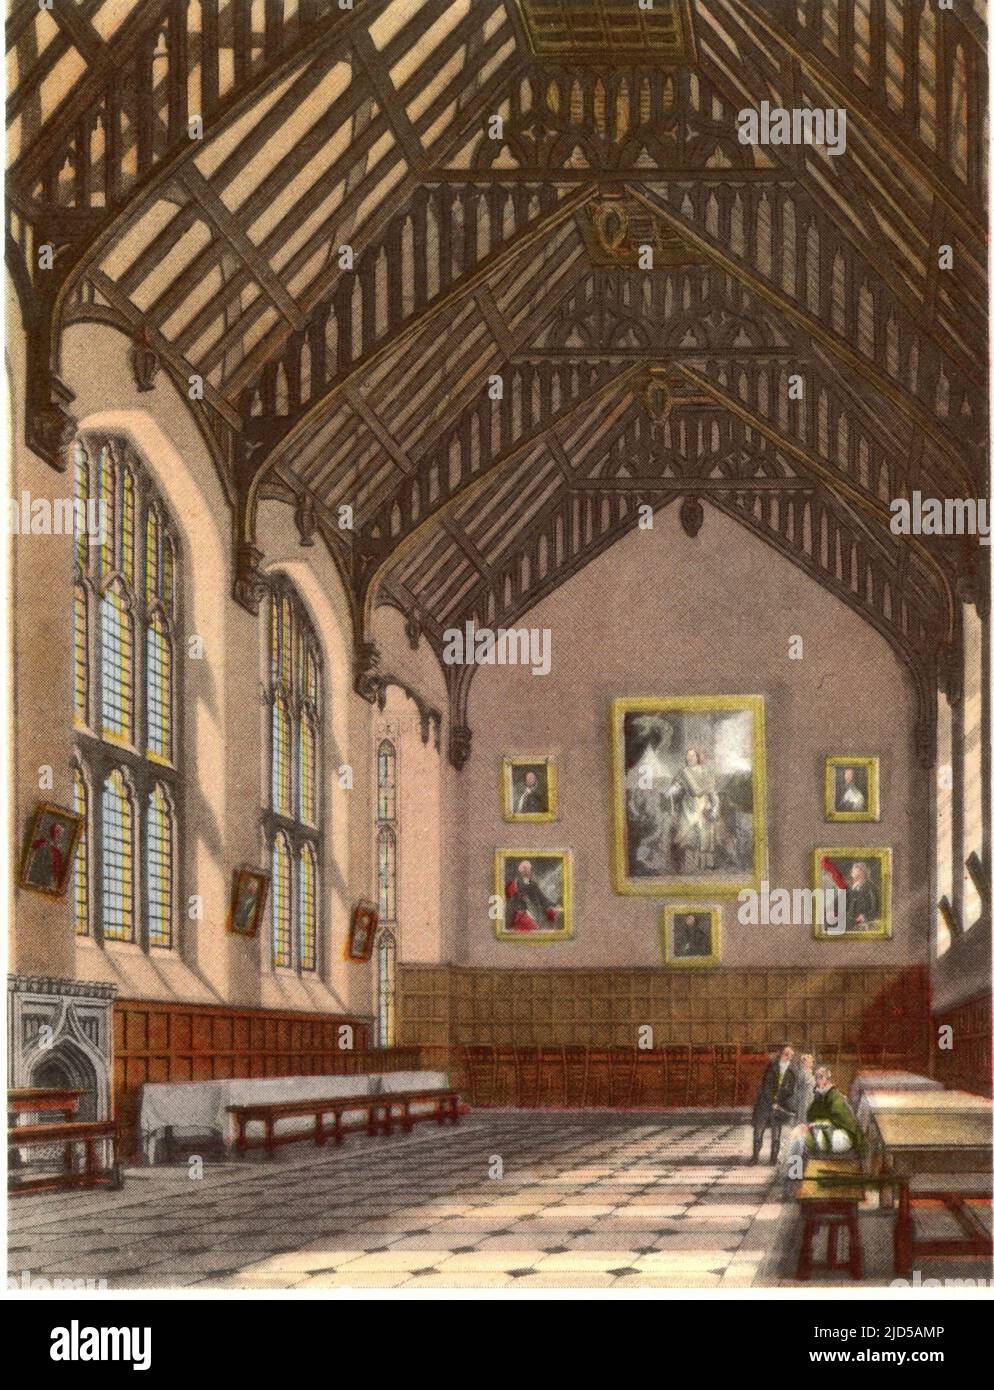 Exeter College Hall, 1814. D'après Auguste Charles Pugin (1762-1832). Exeter College est l'un des collèges constitutifs de l'Université d'Oxford à Oxford, en Angleterre. Elle a été fondée en 1314 par Walter de Stapledon (1261-1326), évêque d'Exeter. La salle, construite en 1618, est remarquable pour ses plafonds voûtés et ses nombreux portraits. Un tirage de 'A History of the University of Oxford, its Colleges, Halls, and public Buildings', publié par Rudolph Ackermann, 1814. Illustré par Augustus Pugin, F. Mackenzie et d'autres. Banque D'Images